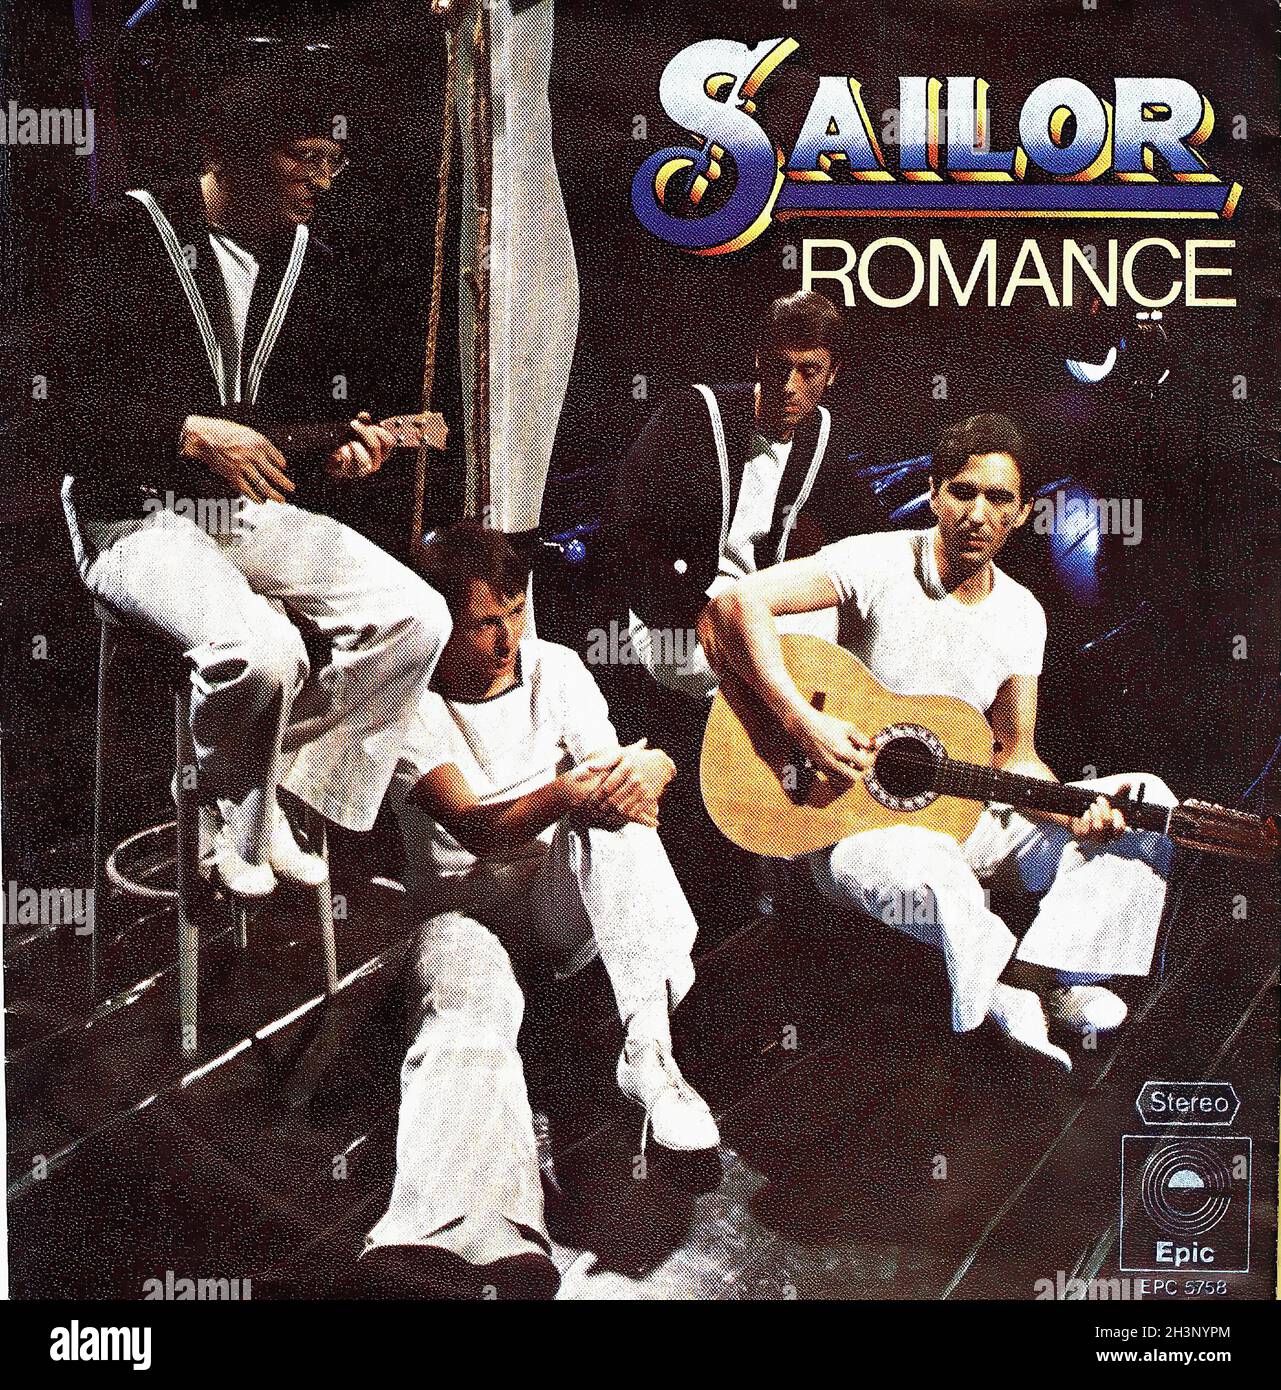 Vintage Vinyl Recording - Sailor - Romance - D - 1977 Stock Photo